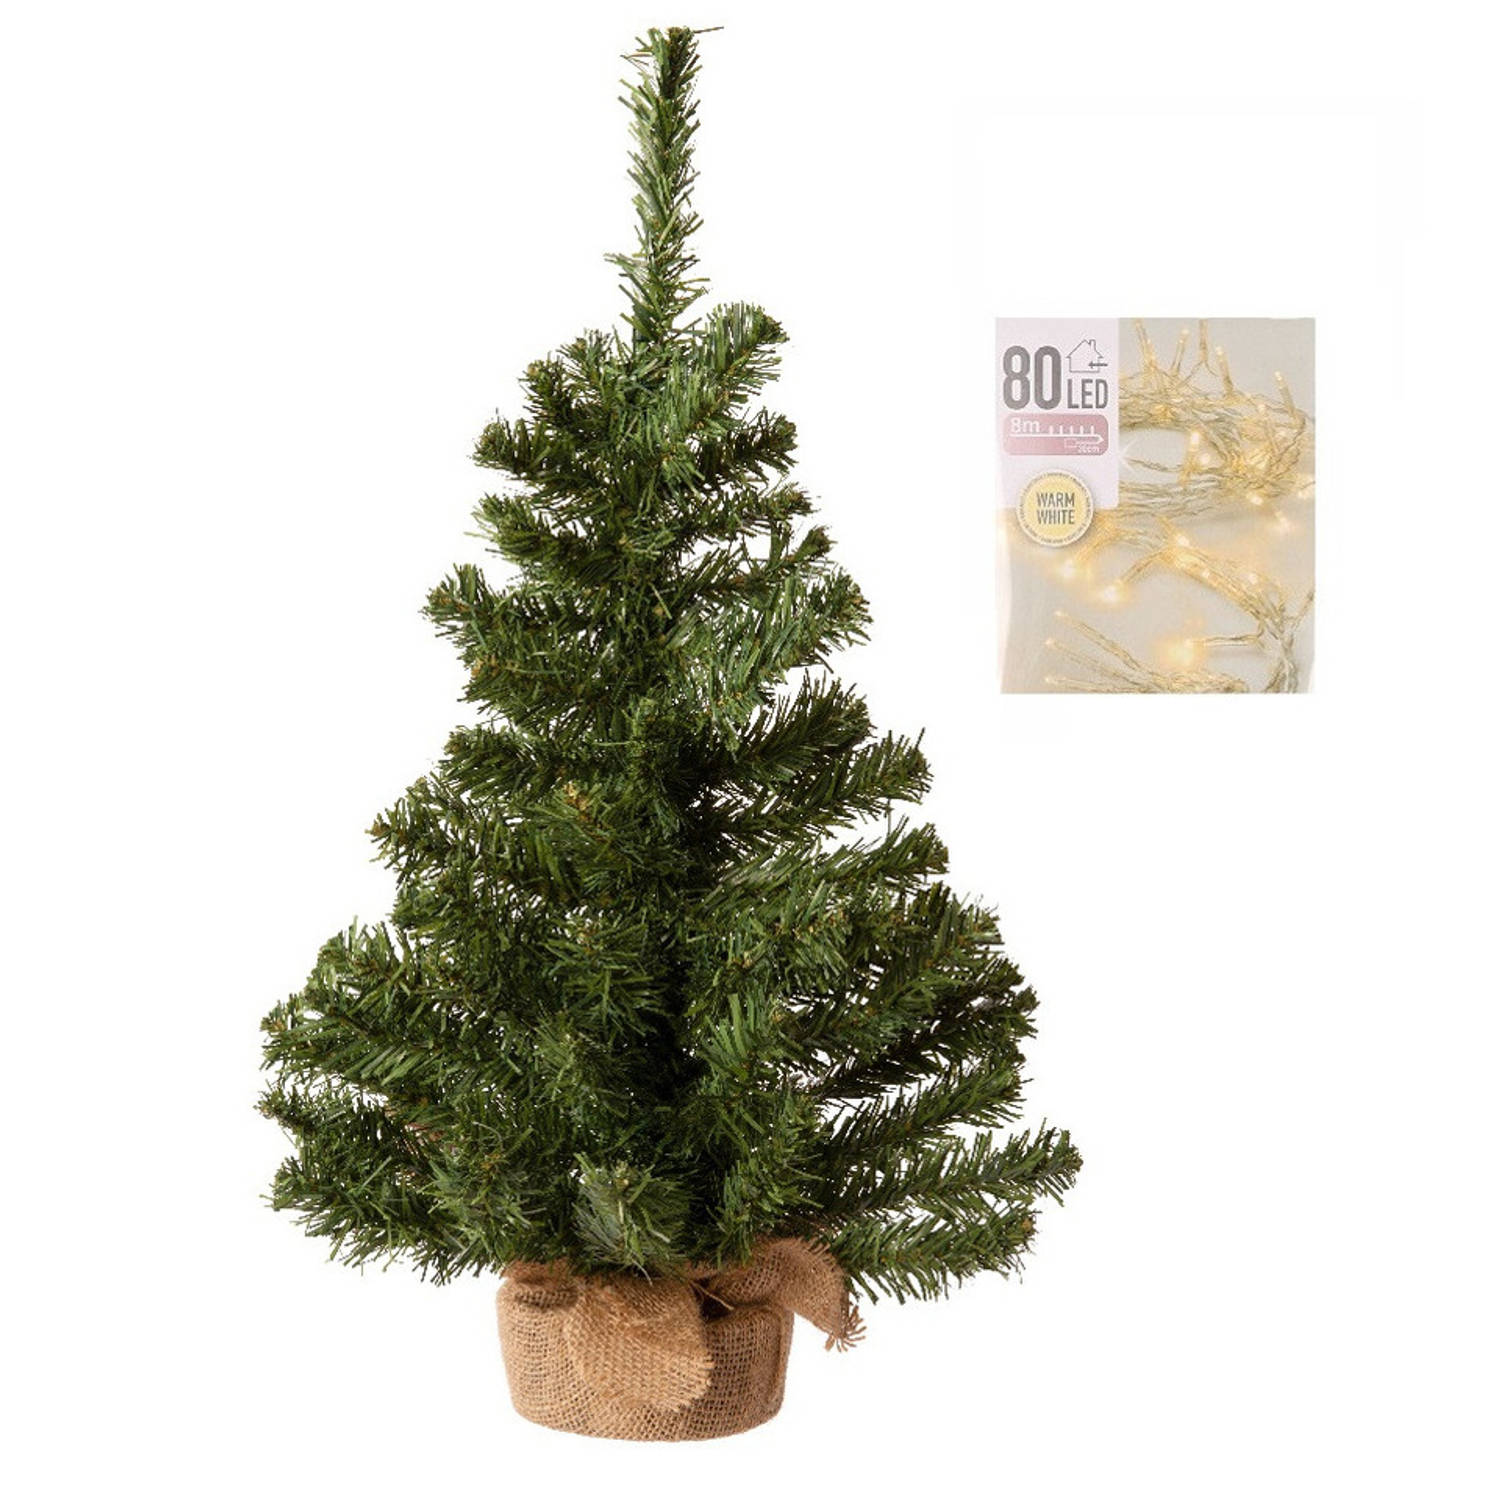 Volle Kerstboom In Jute Zak 60 Cm Inclusief Warm Witte Kerstverlichting Kunstkerstboom